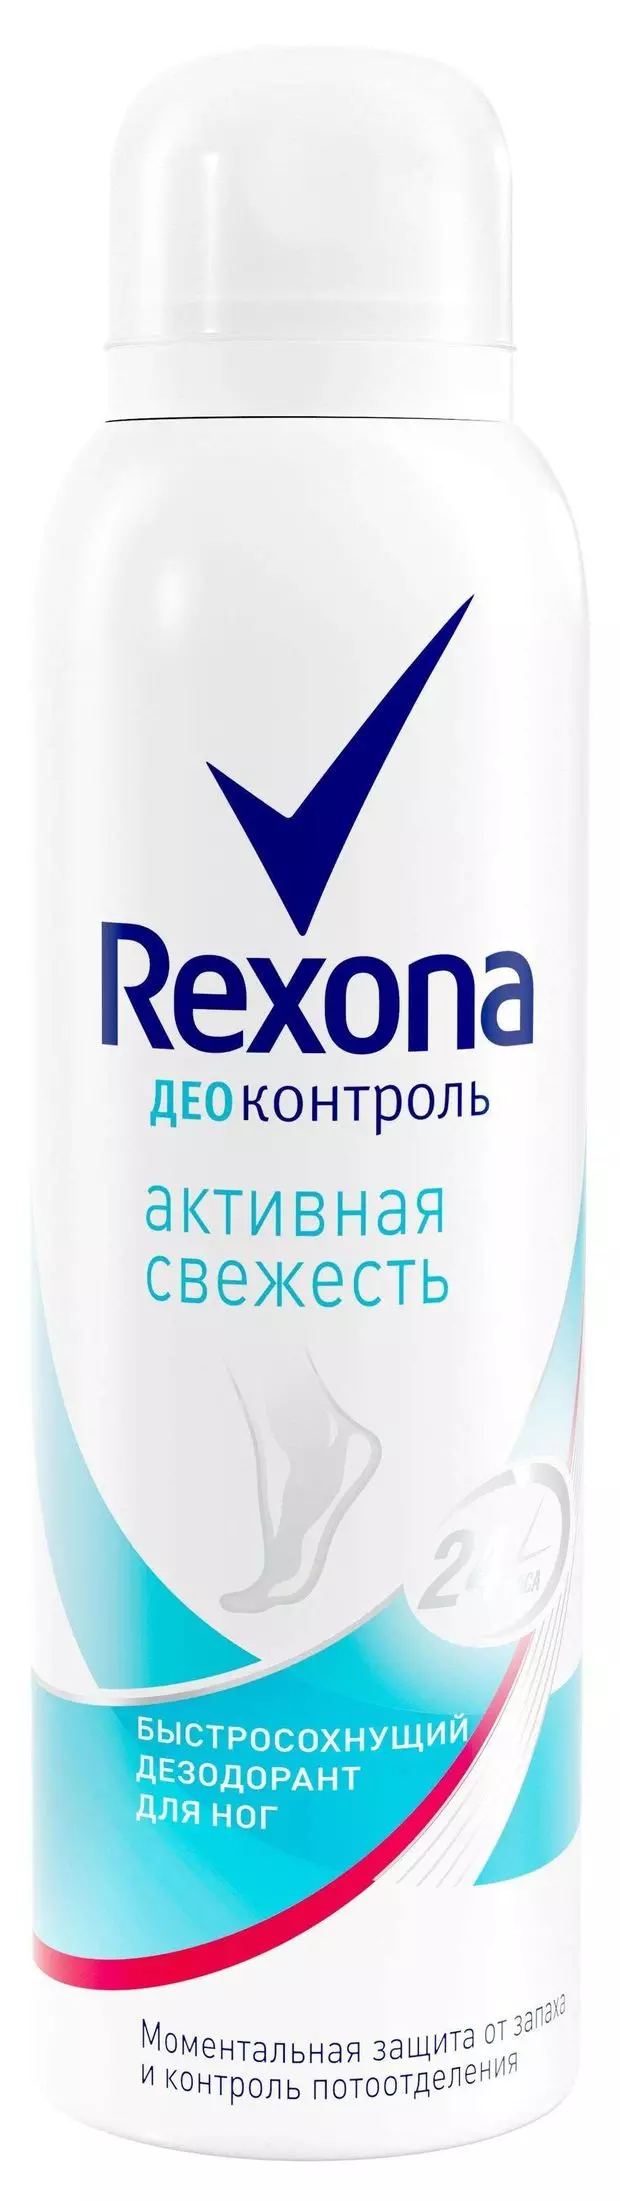 Дезодорант Rexona ДеоКонтроль Активная свежесть для ног 150мл